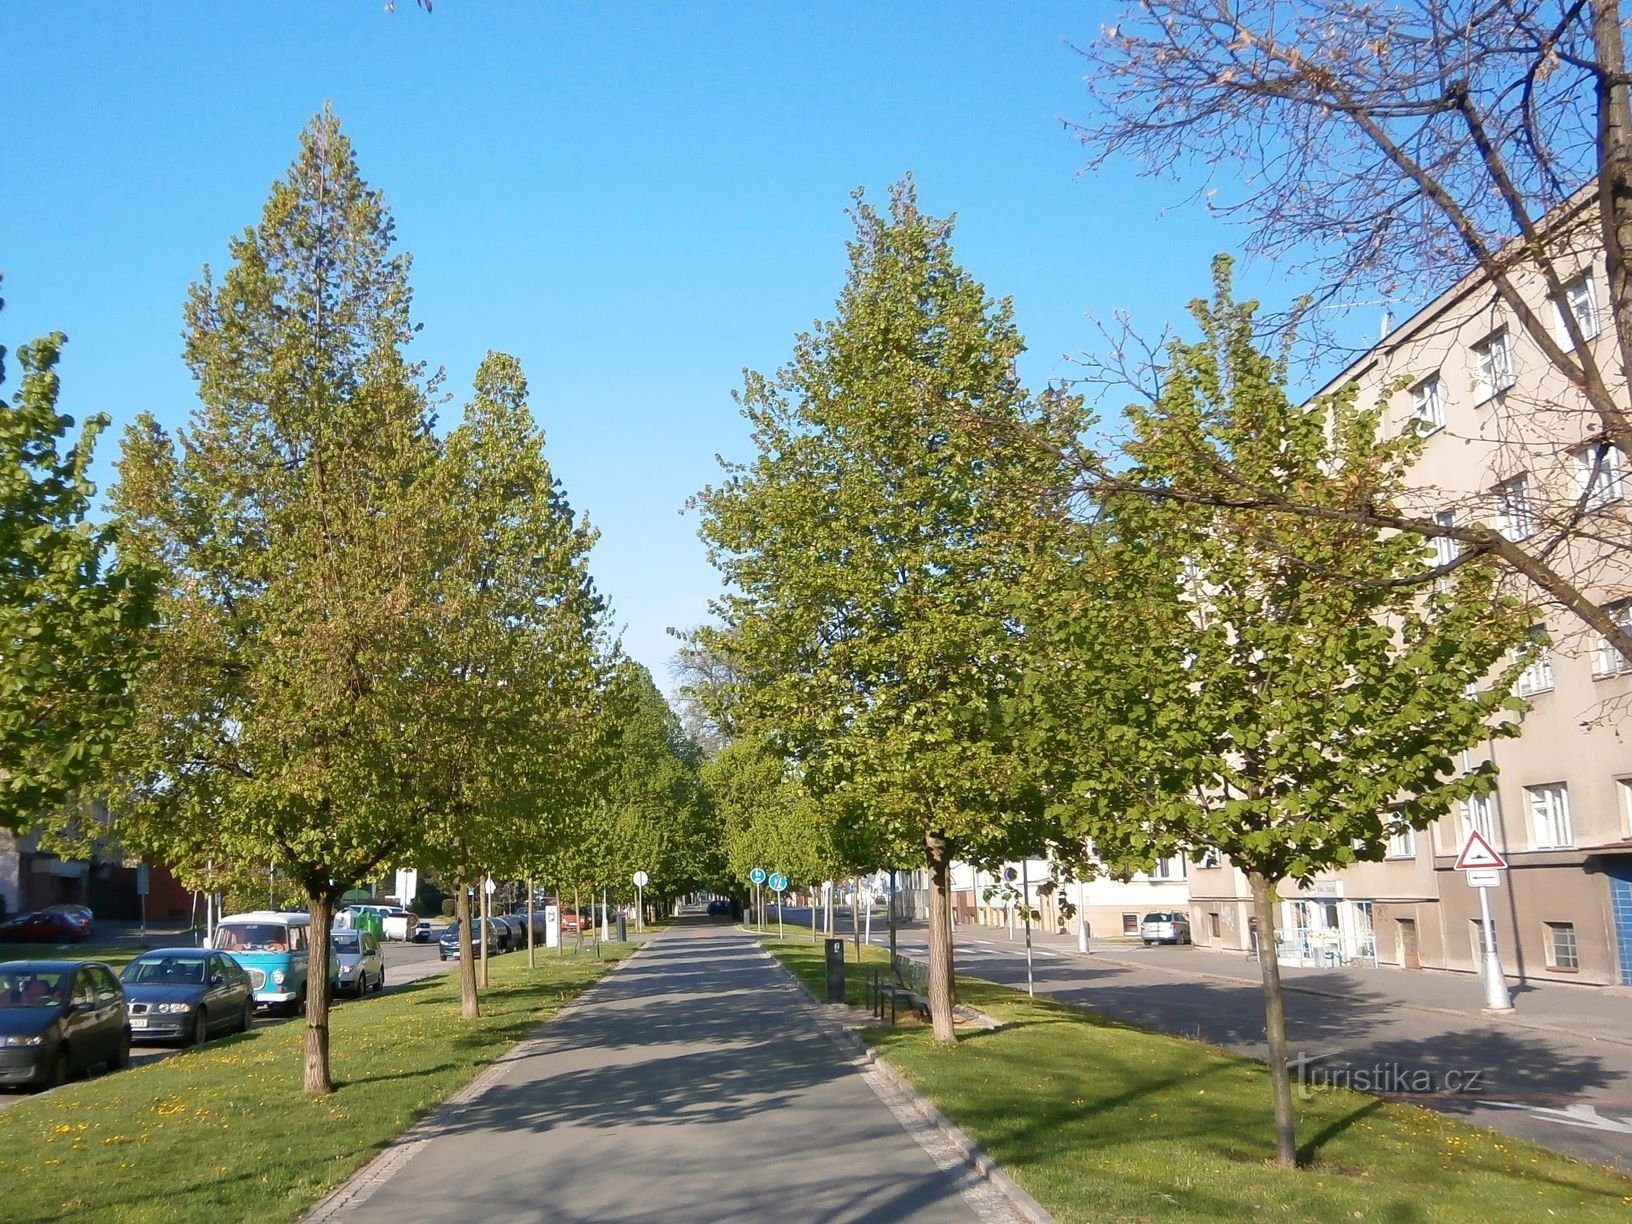 Limite des arbres Lipky (Hradec Králové, 20.4.2014/XNUMX/XNUMX)